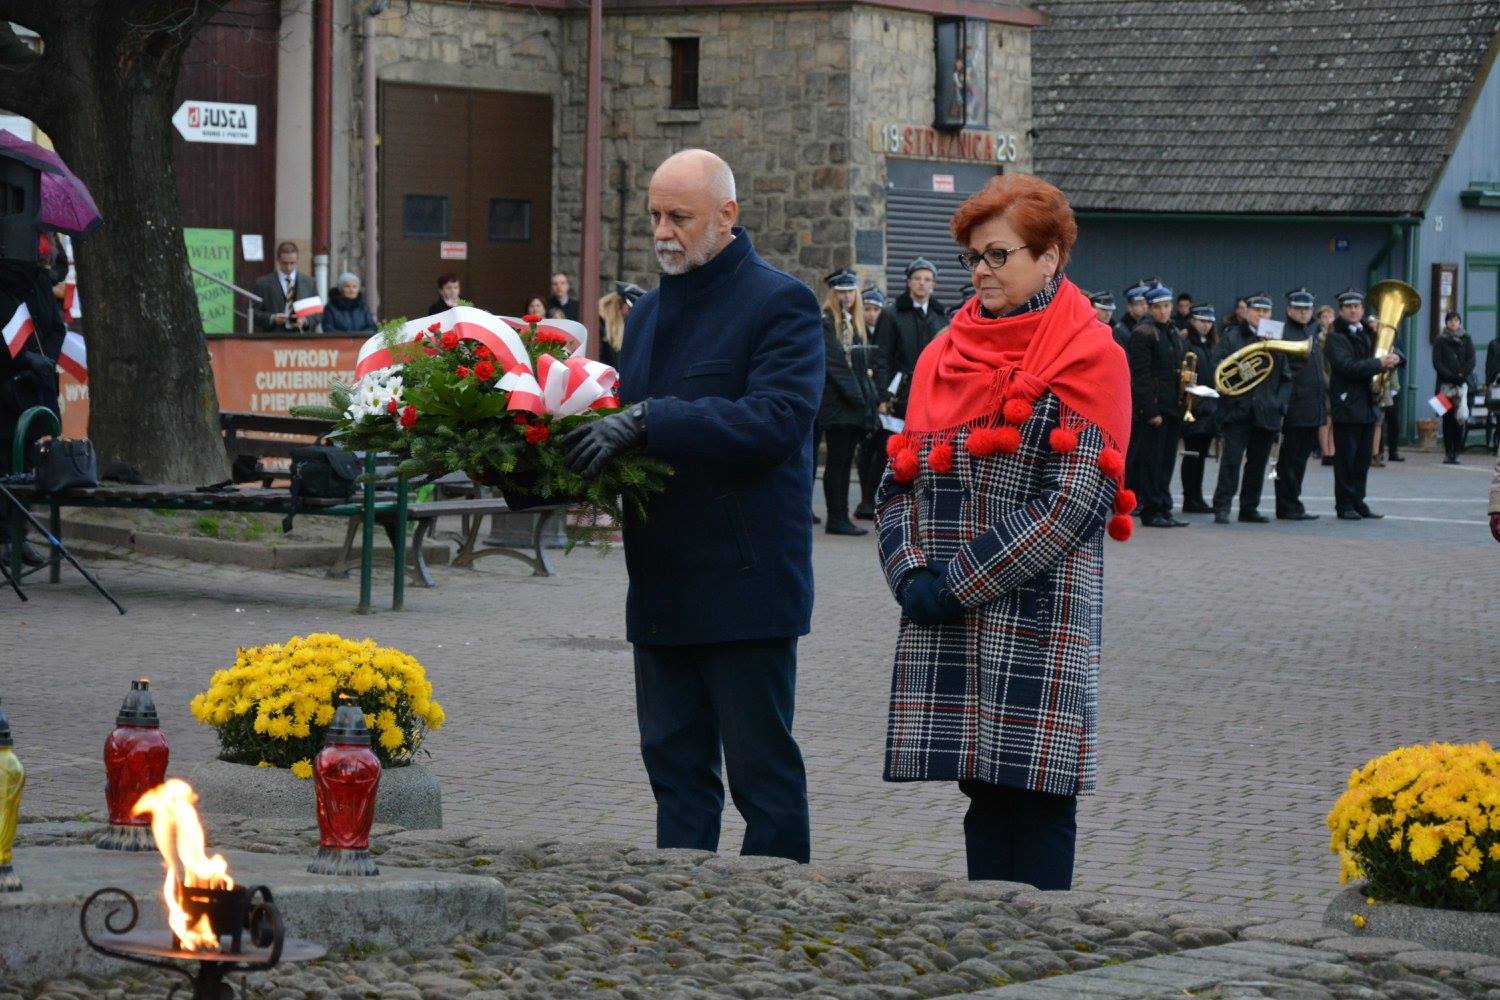 Burmistrz wraz z Wiceburmistrz składa kwiaty na symbolicznym Grobie Nieznanego Żołnierza w Rynku w Dobczycach